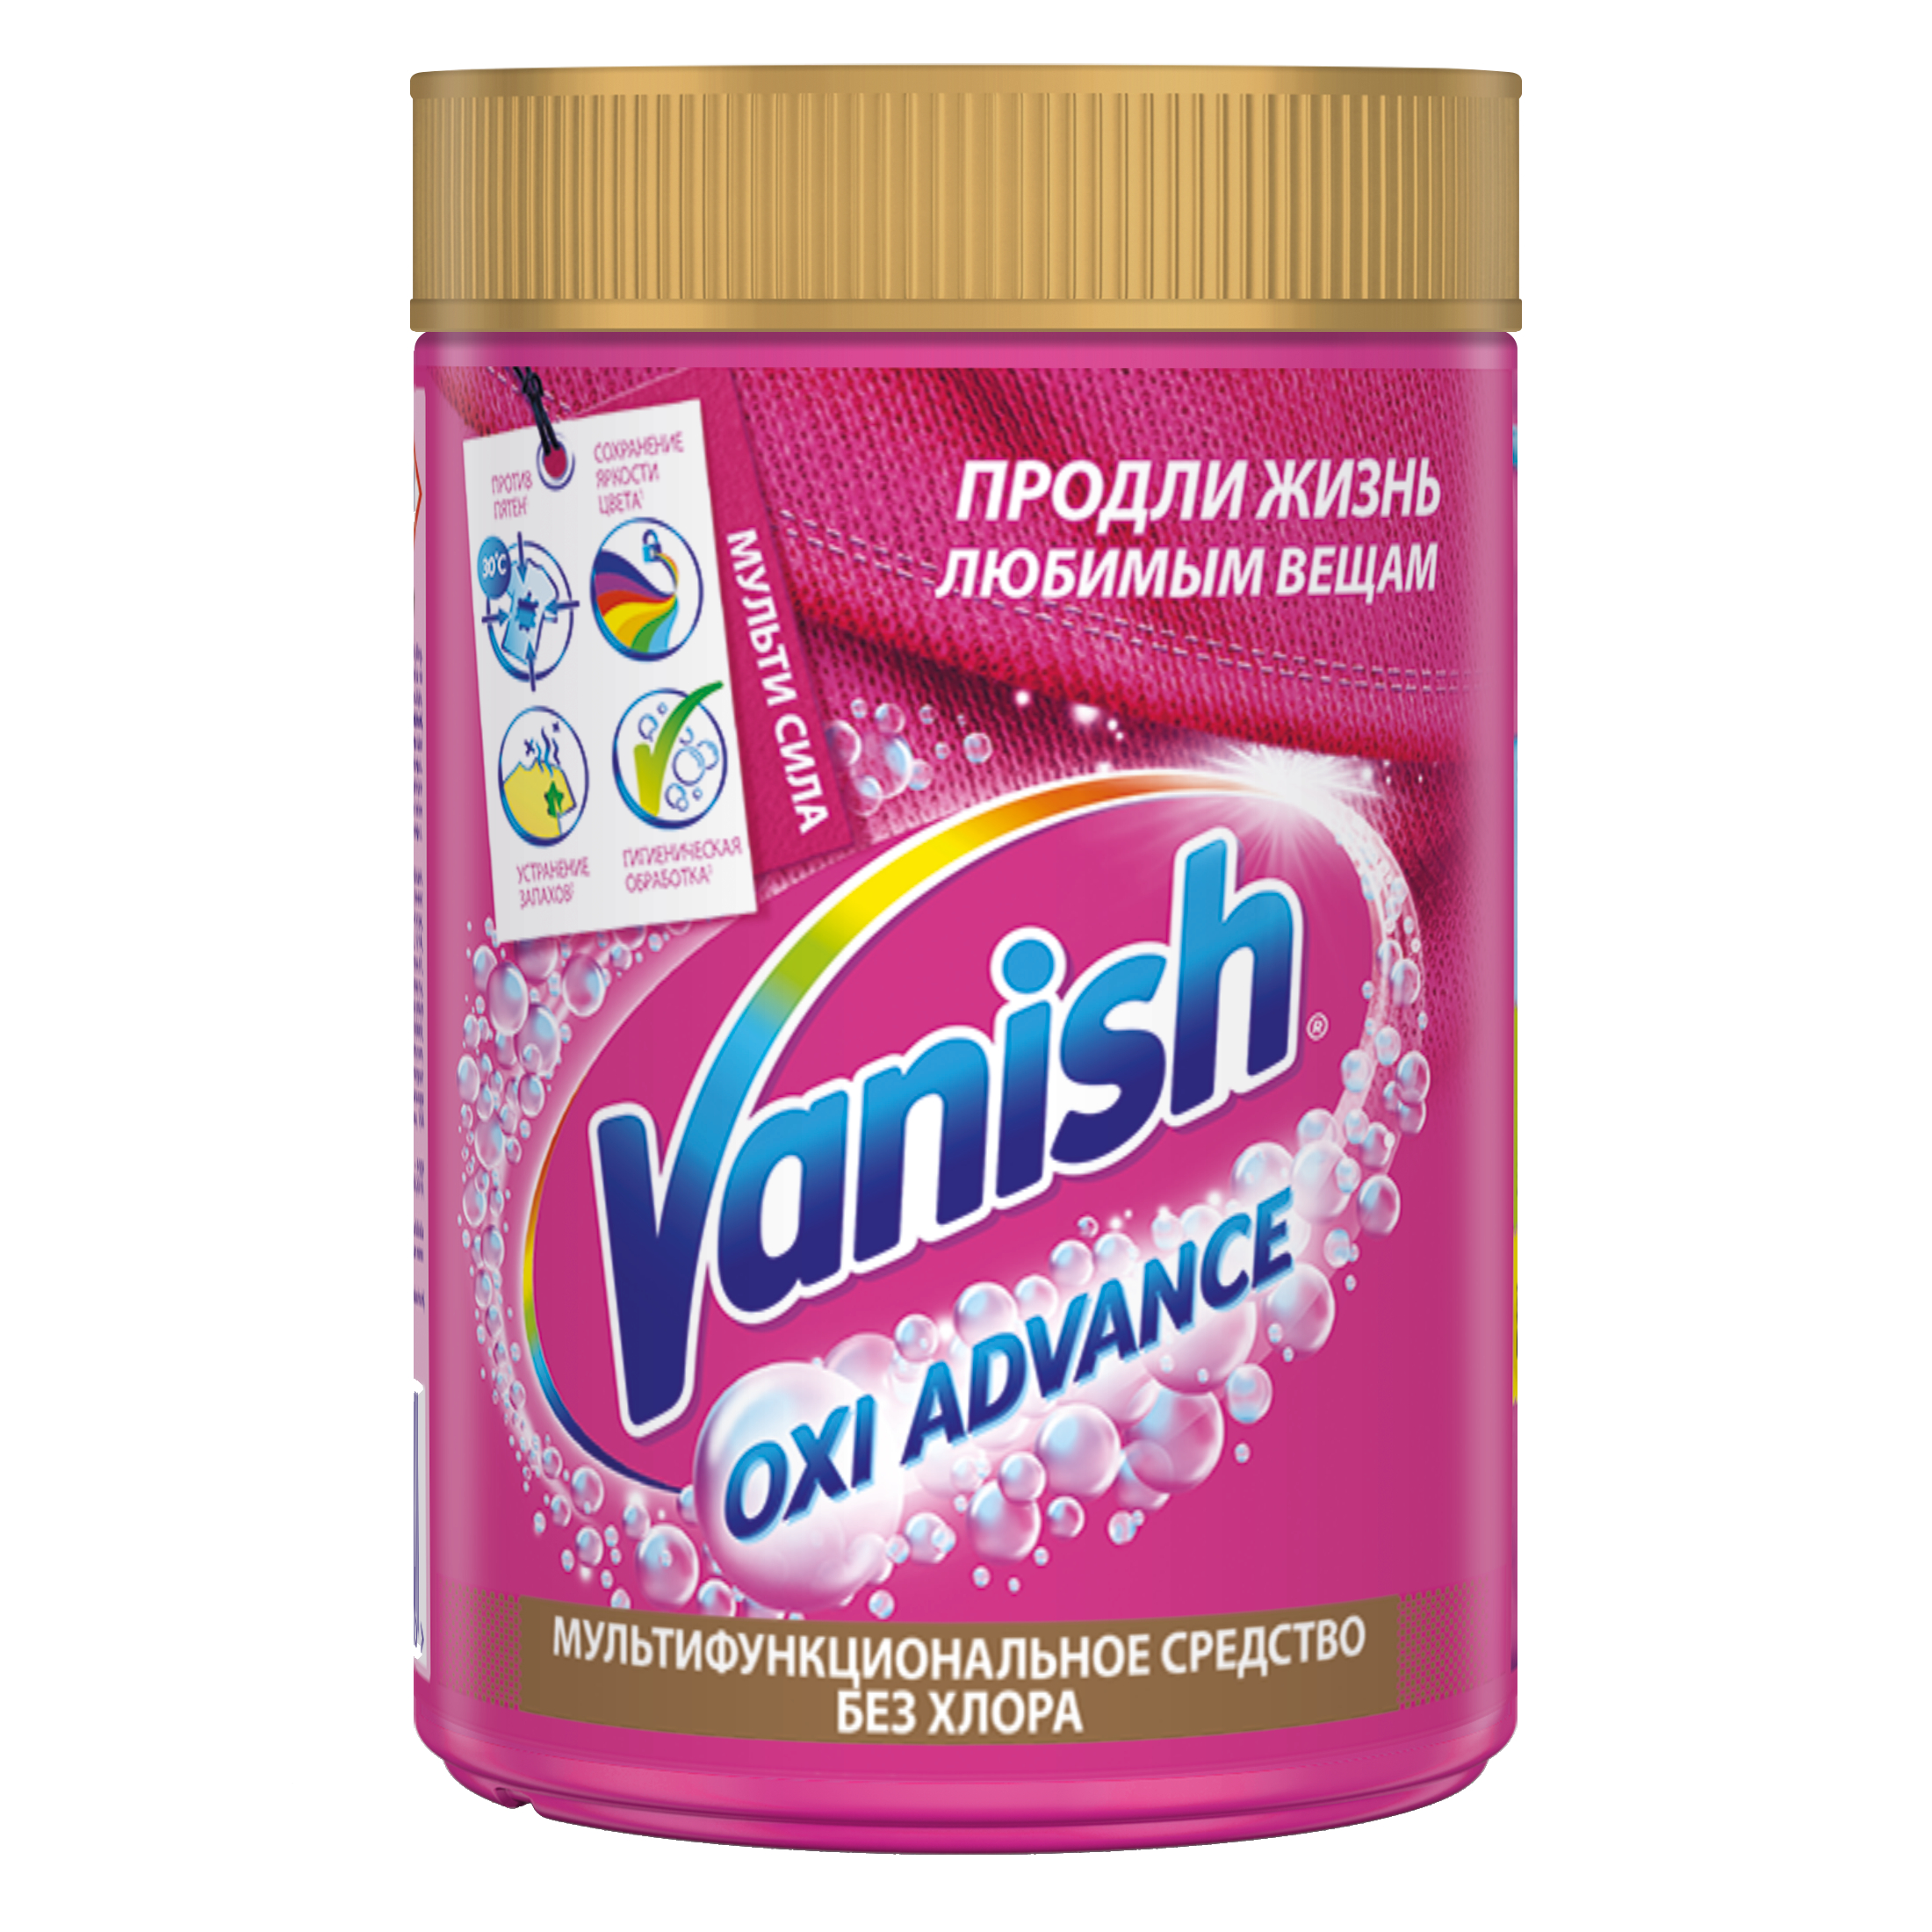 Пятновыводитель Vanish Orion для тканей порошок 800 г пятновыводитель vanish для тканей отбеливатель порошкообразный 800 г